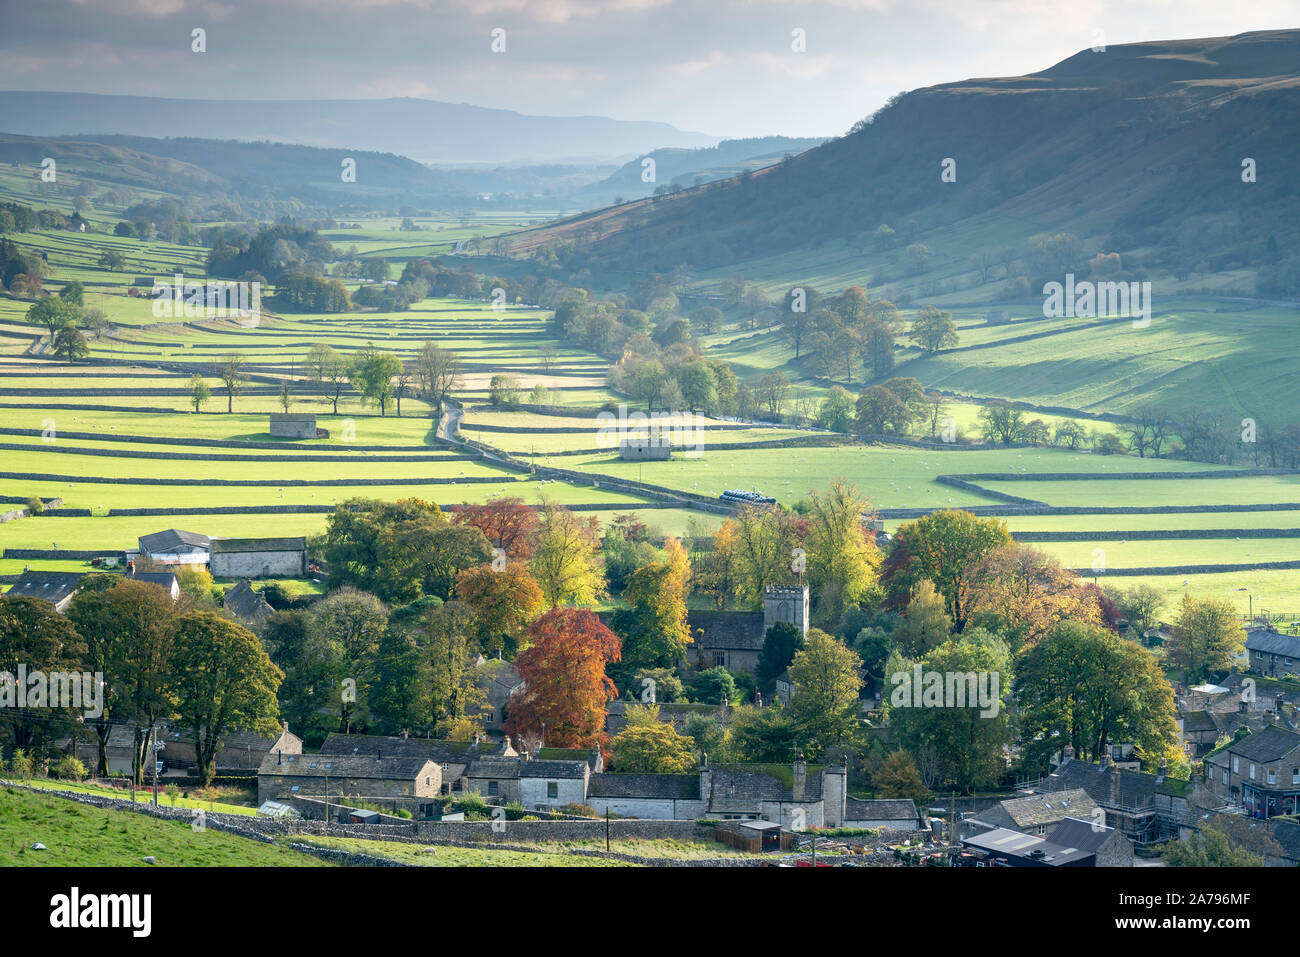 Couleurs d'automne dans et autour de Kettlewell village dans la région de Wharfedale, les vallées du Yorkshire, UK. Banque D'Images